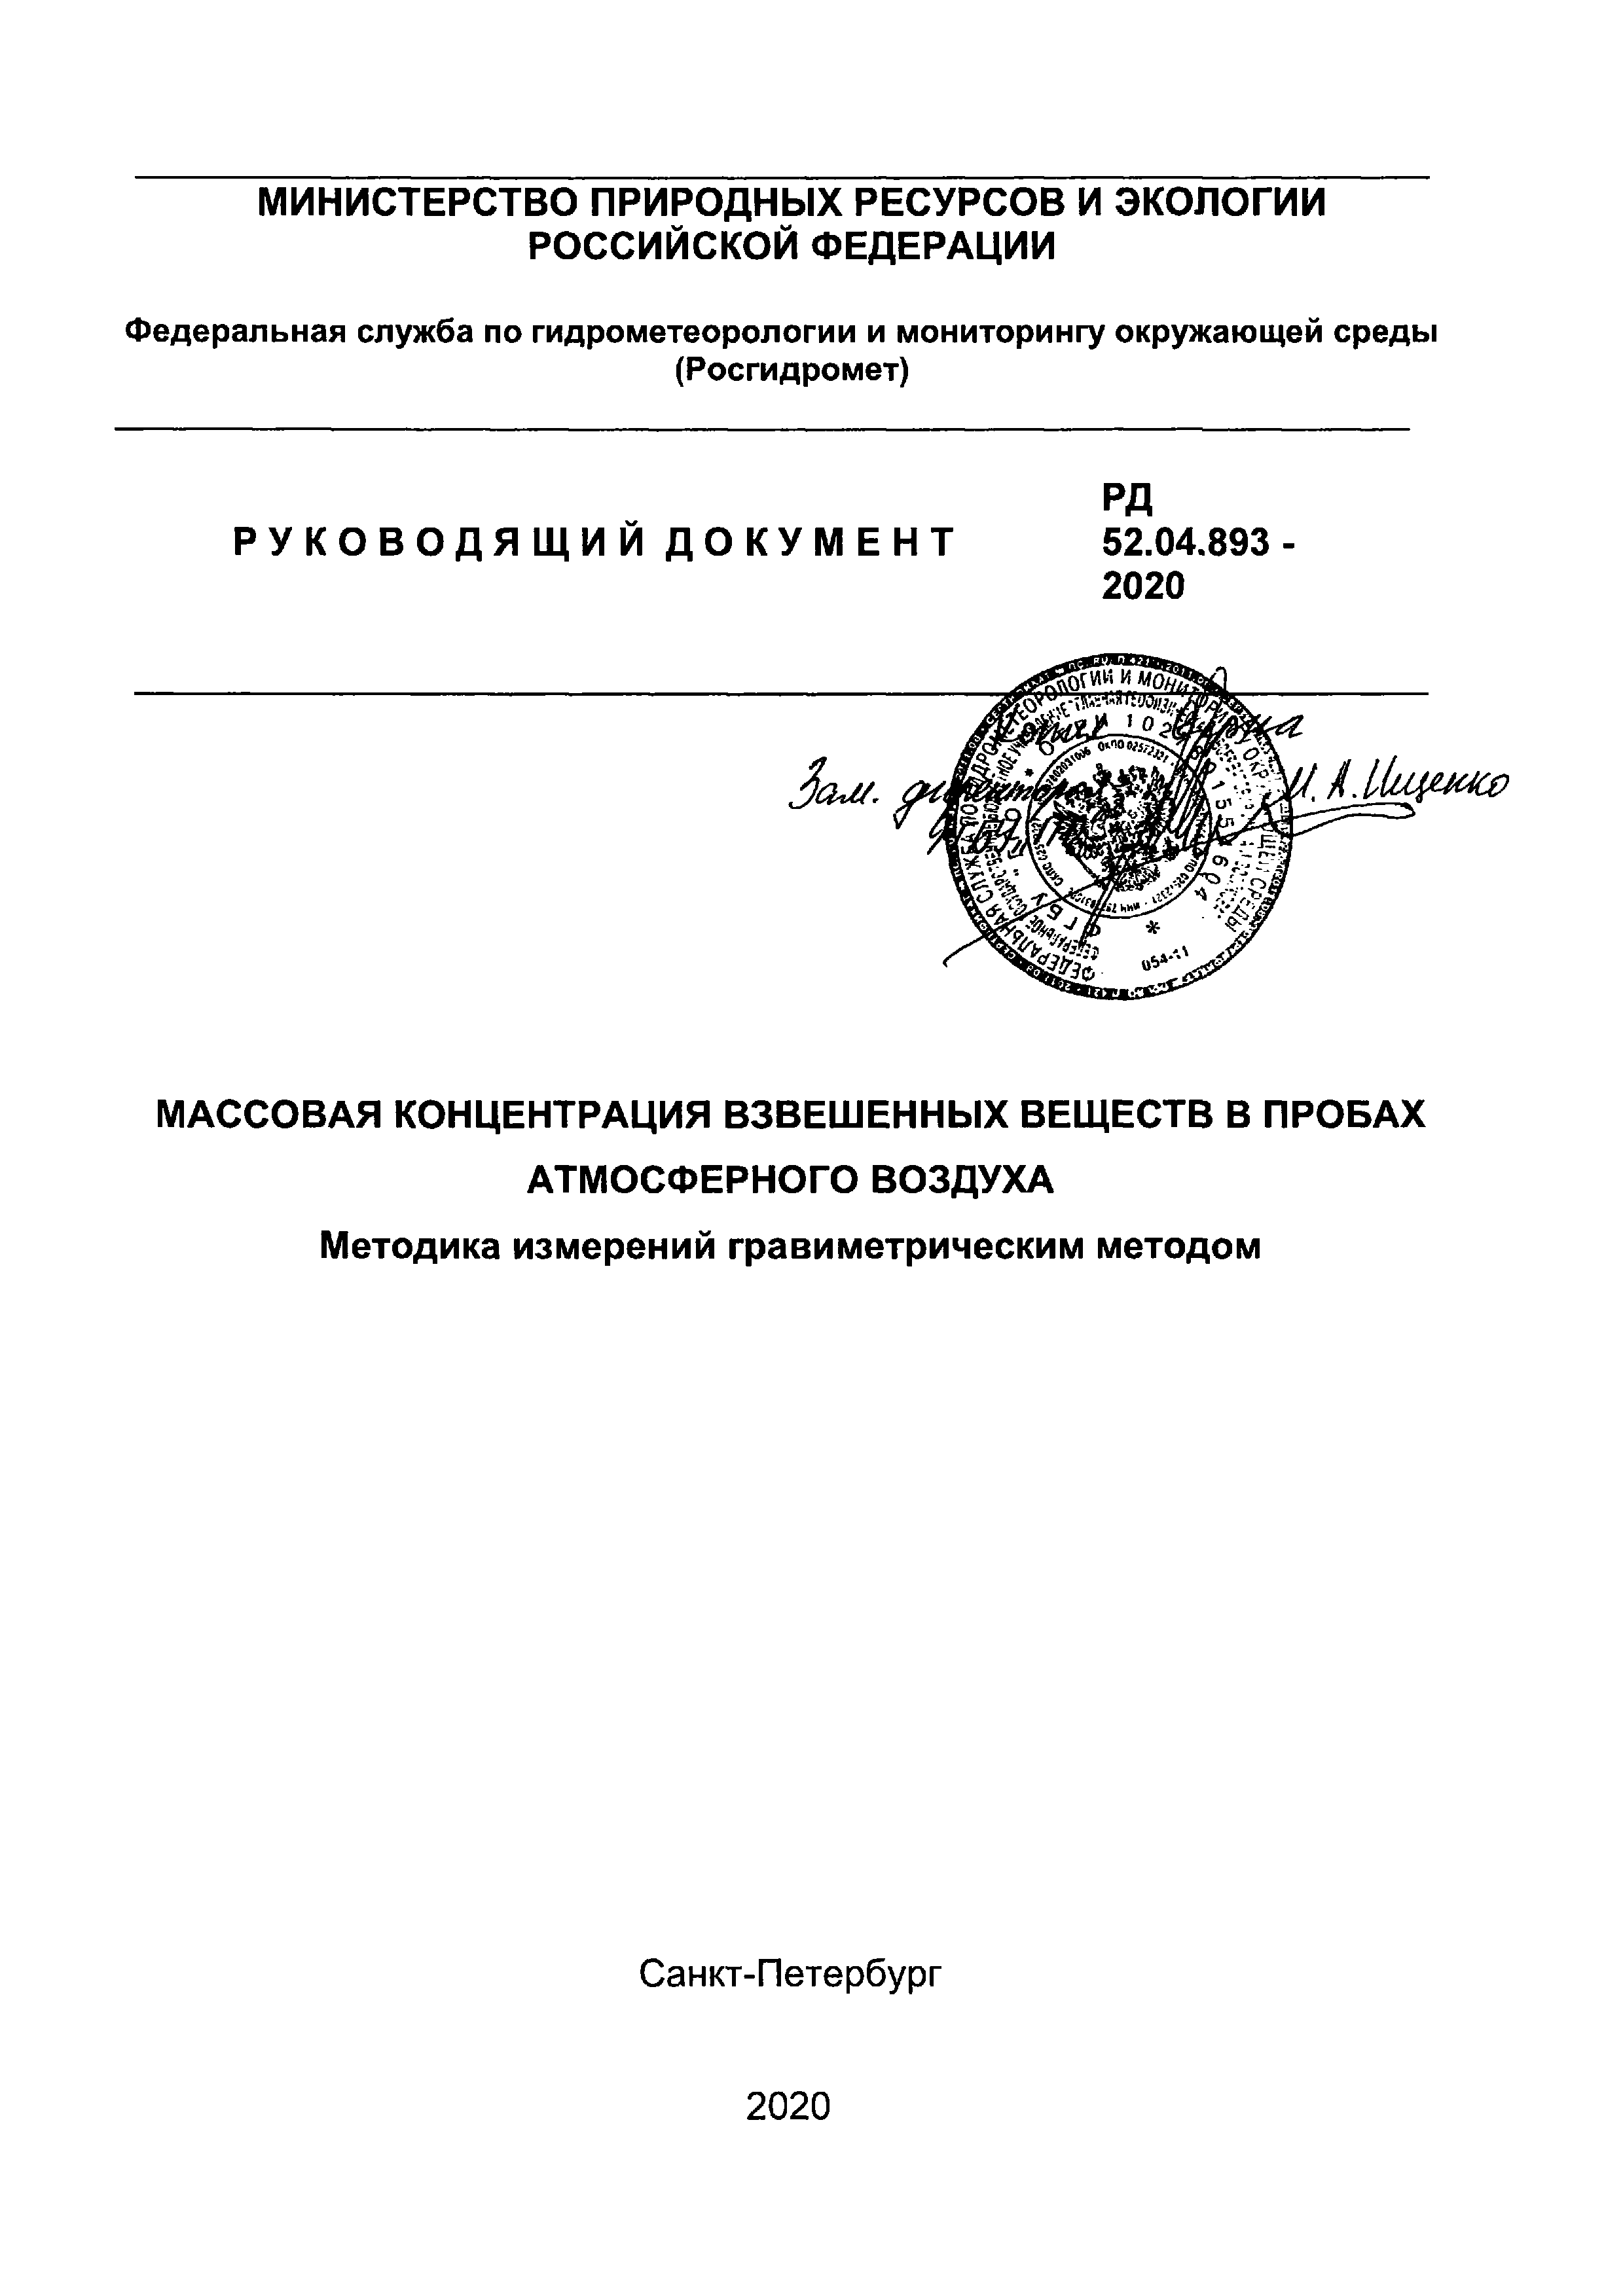 РД 52.04.893-2020